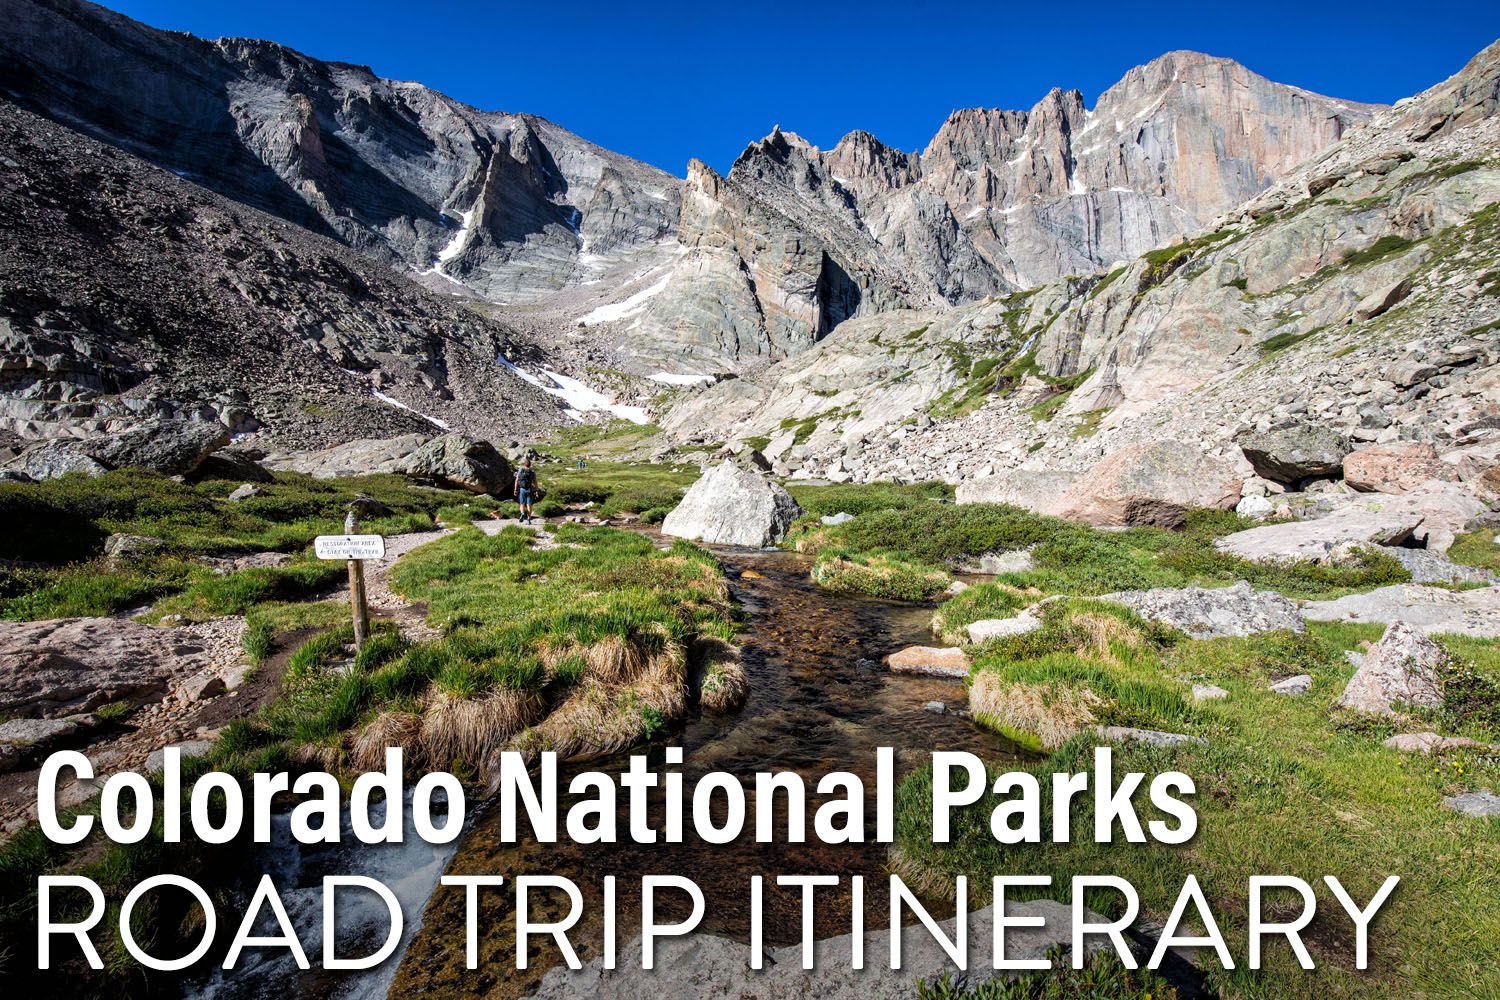 Colorado Road Trip Itinerary